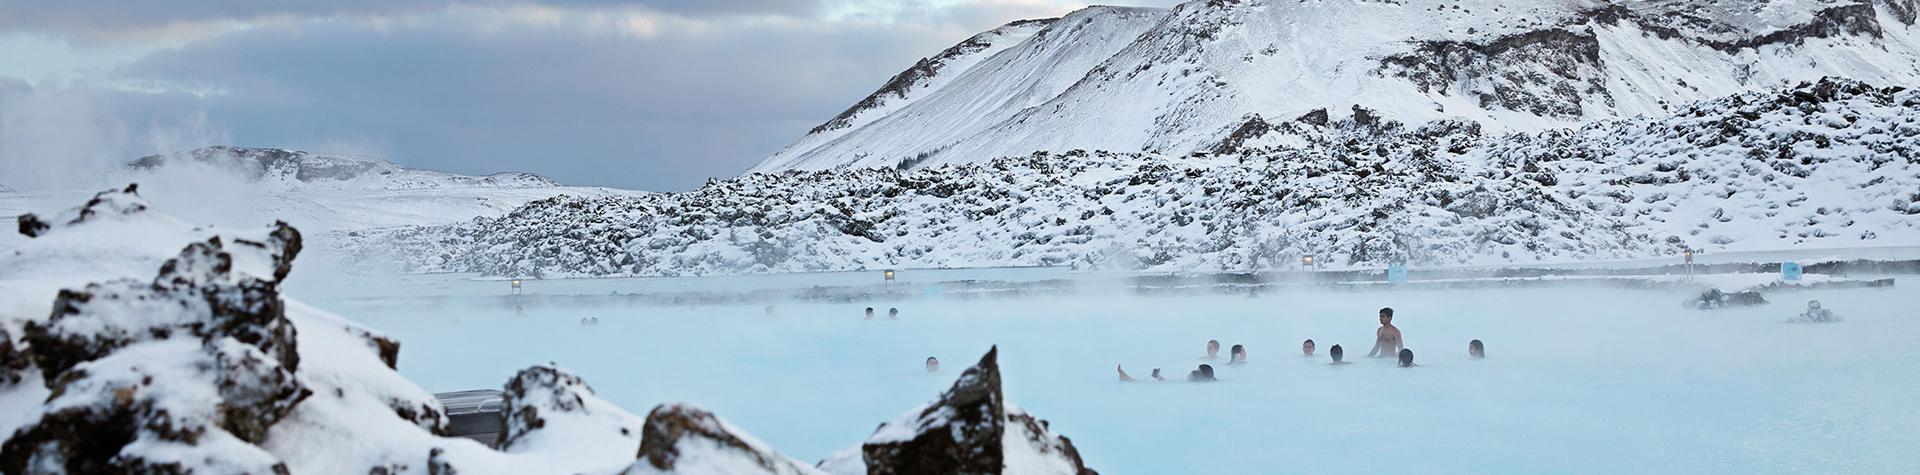 Blå lagunen på Island i vinterlandskap